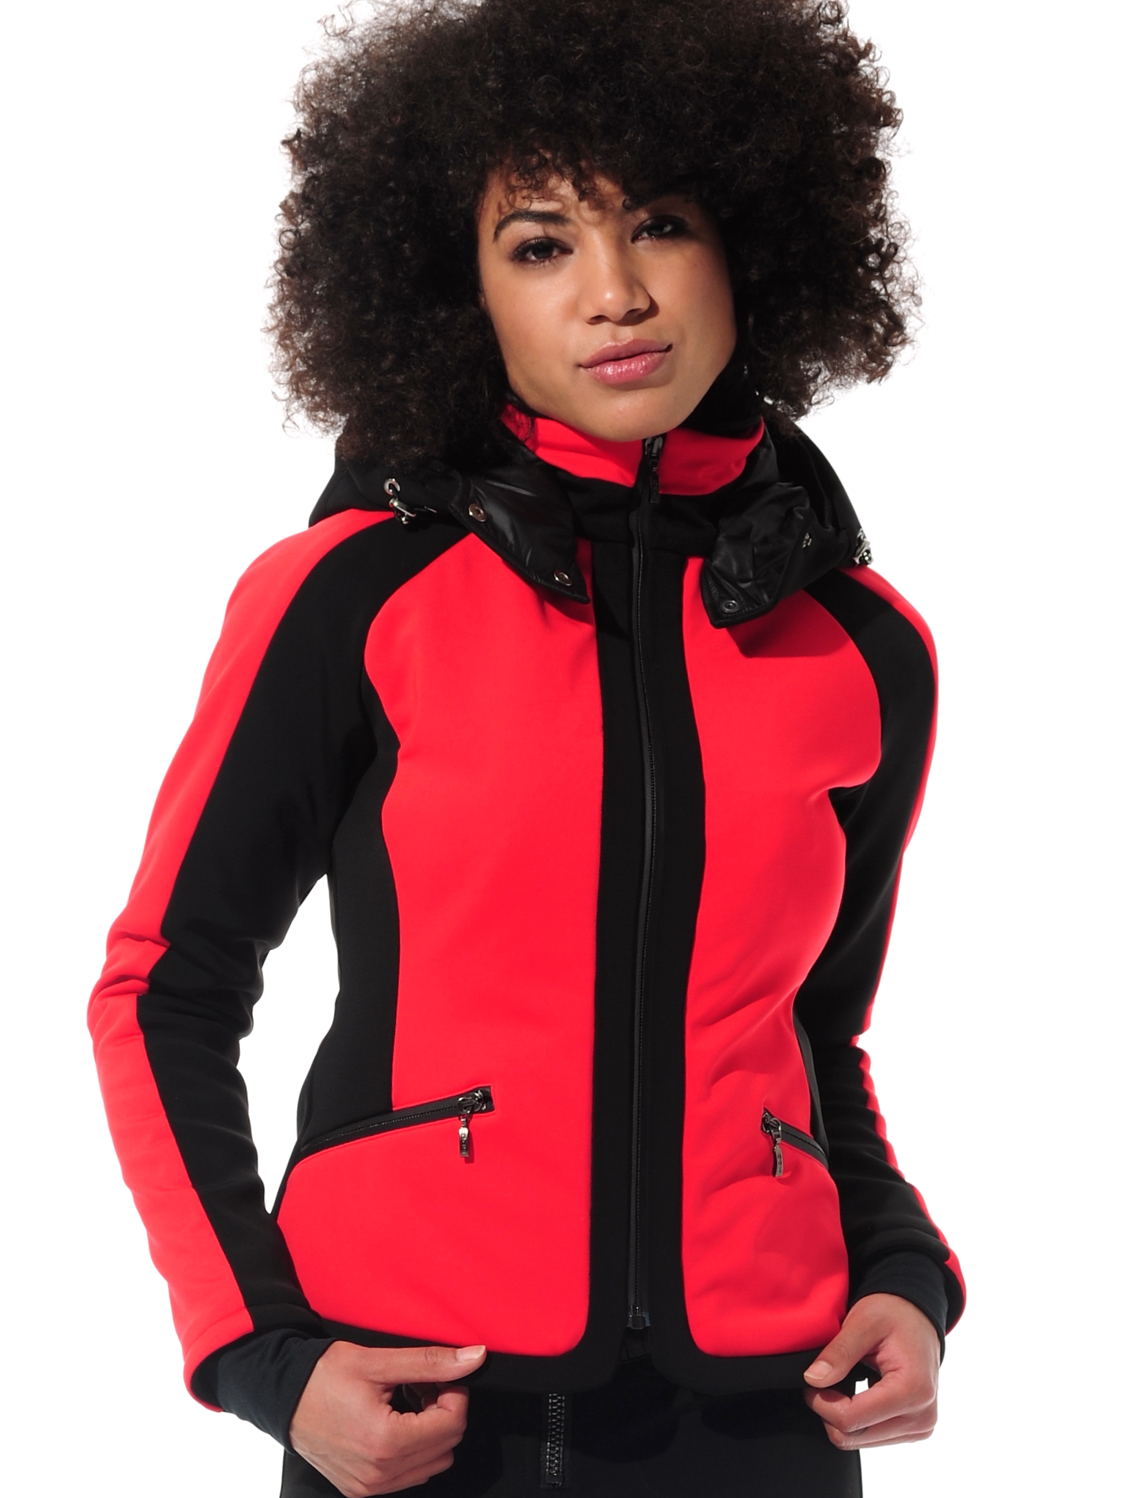 4way stretch ski jacket red/black 